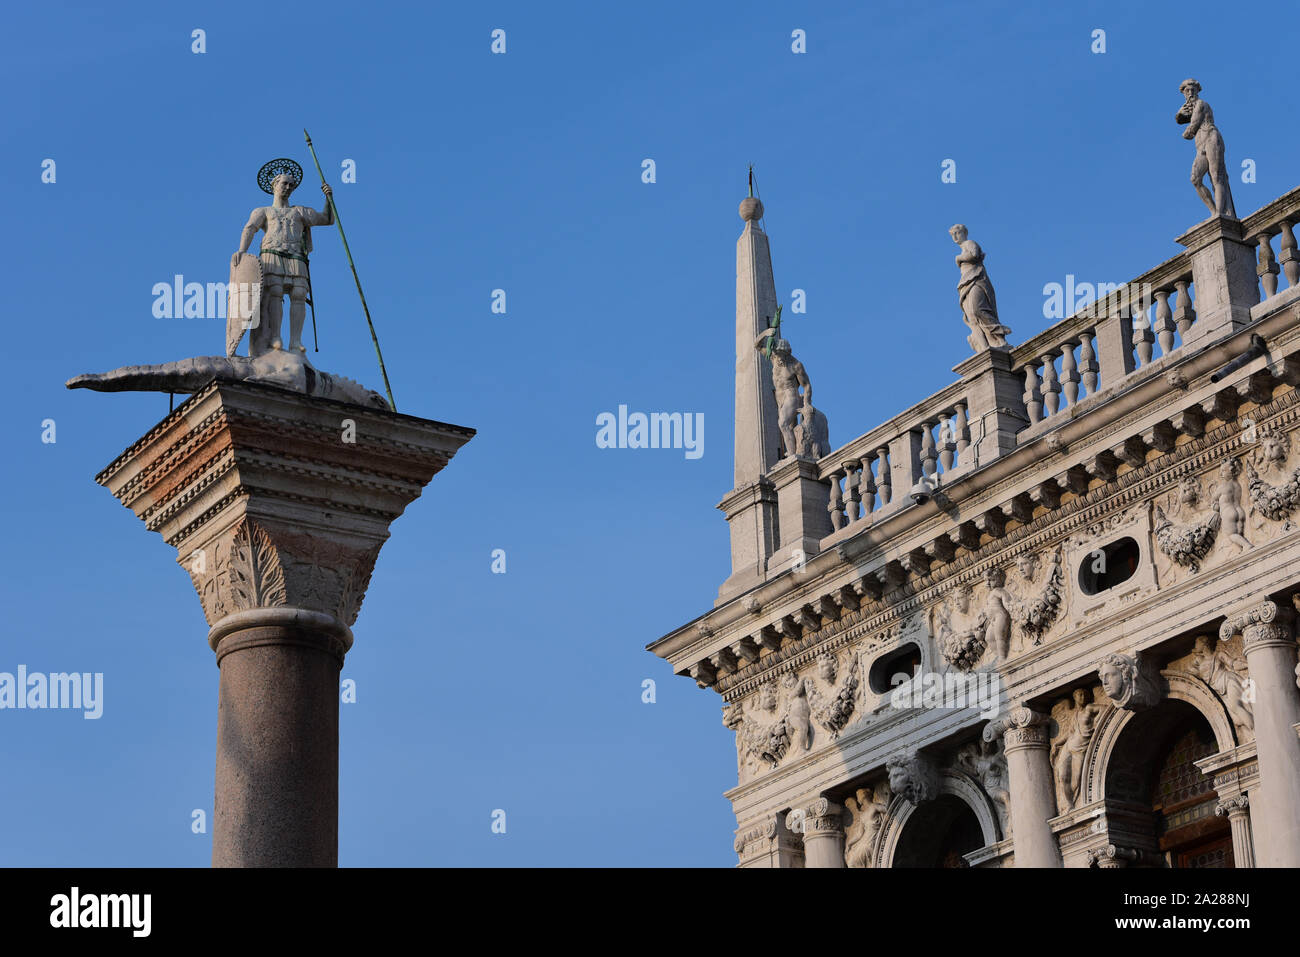 Colonne de granit dans la Piazzetta di San Marco, le guerrier-Saint Théodore, qui était le patron de la ville avant de Saint Marc, Venise, Italie, Europe. Banque D'Images